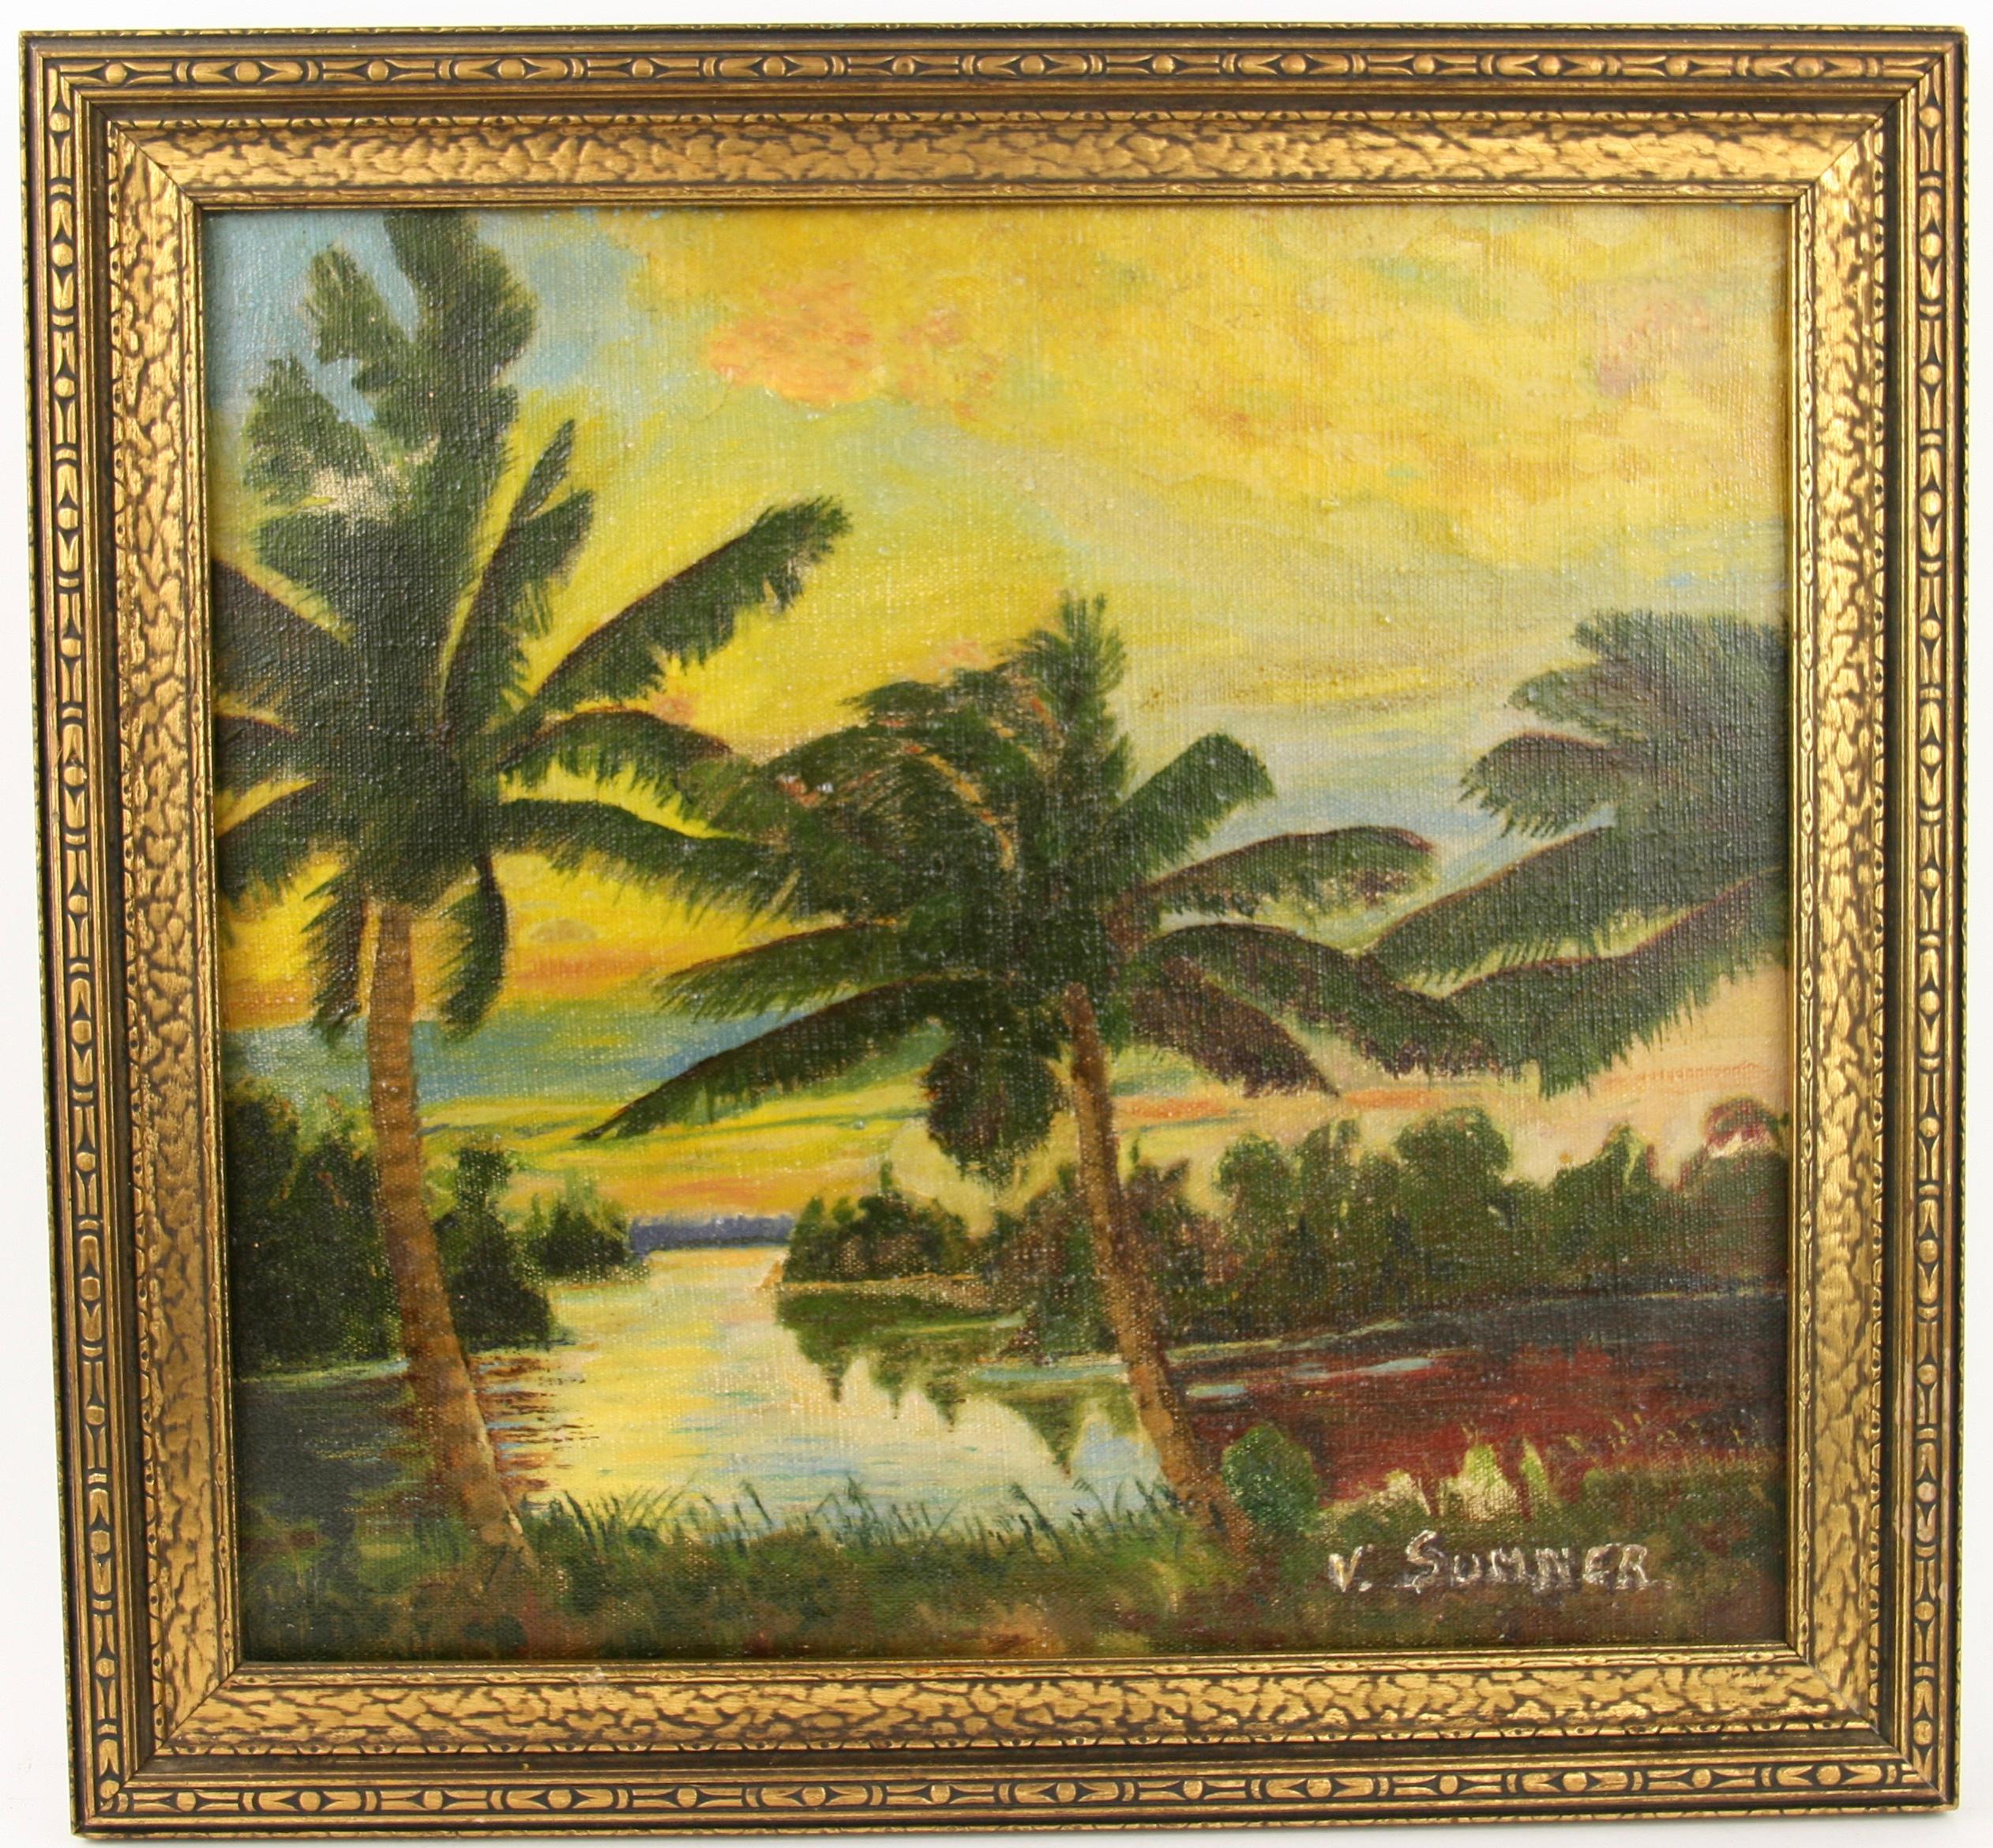 V.Sumner Landscape Painting - Tropical Sunset Landscape